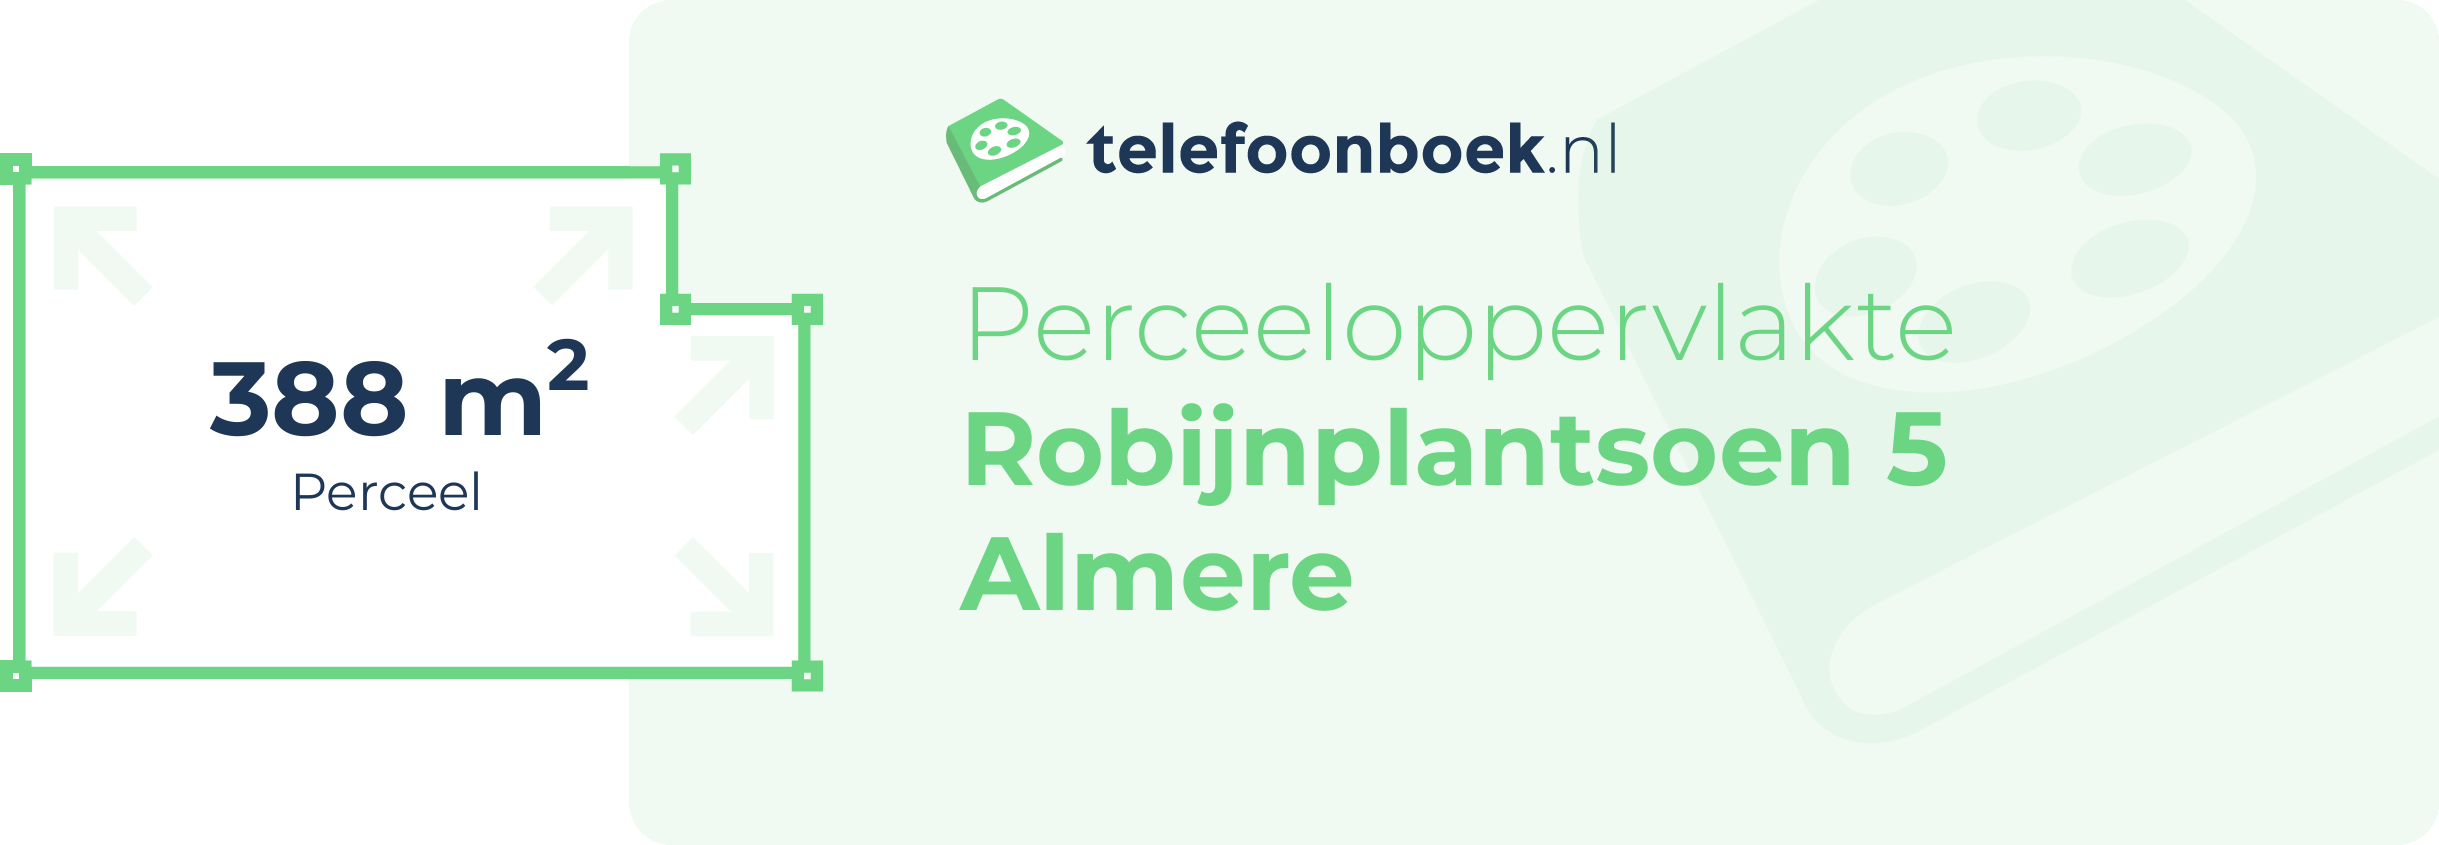 Perceeloppervlakte Robijnplantsoen 5 Almere